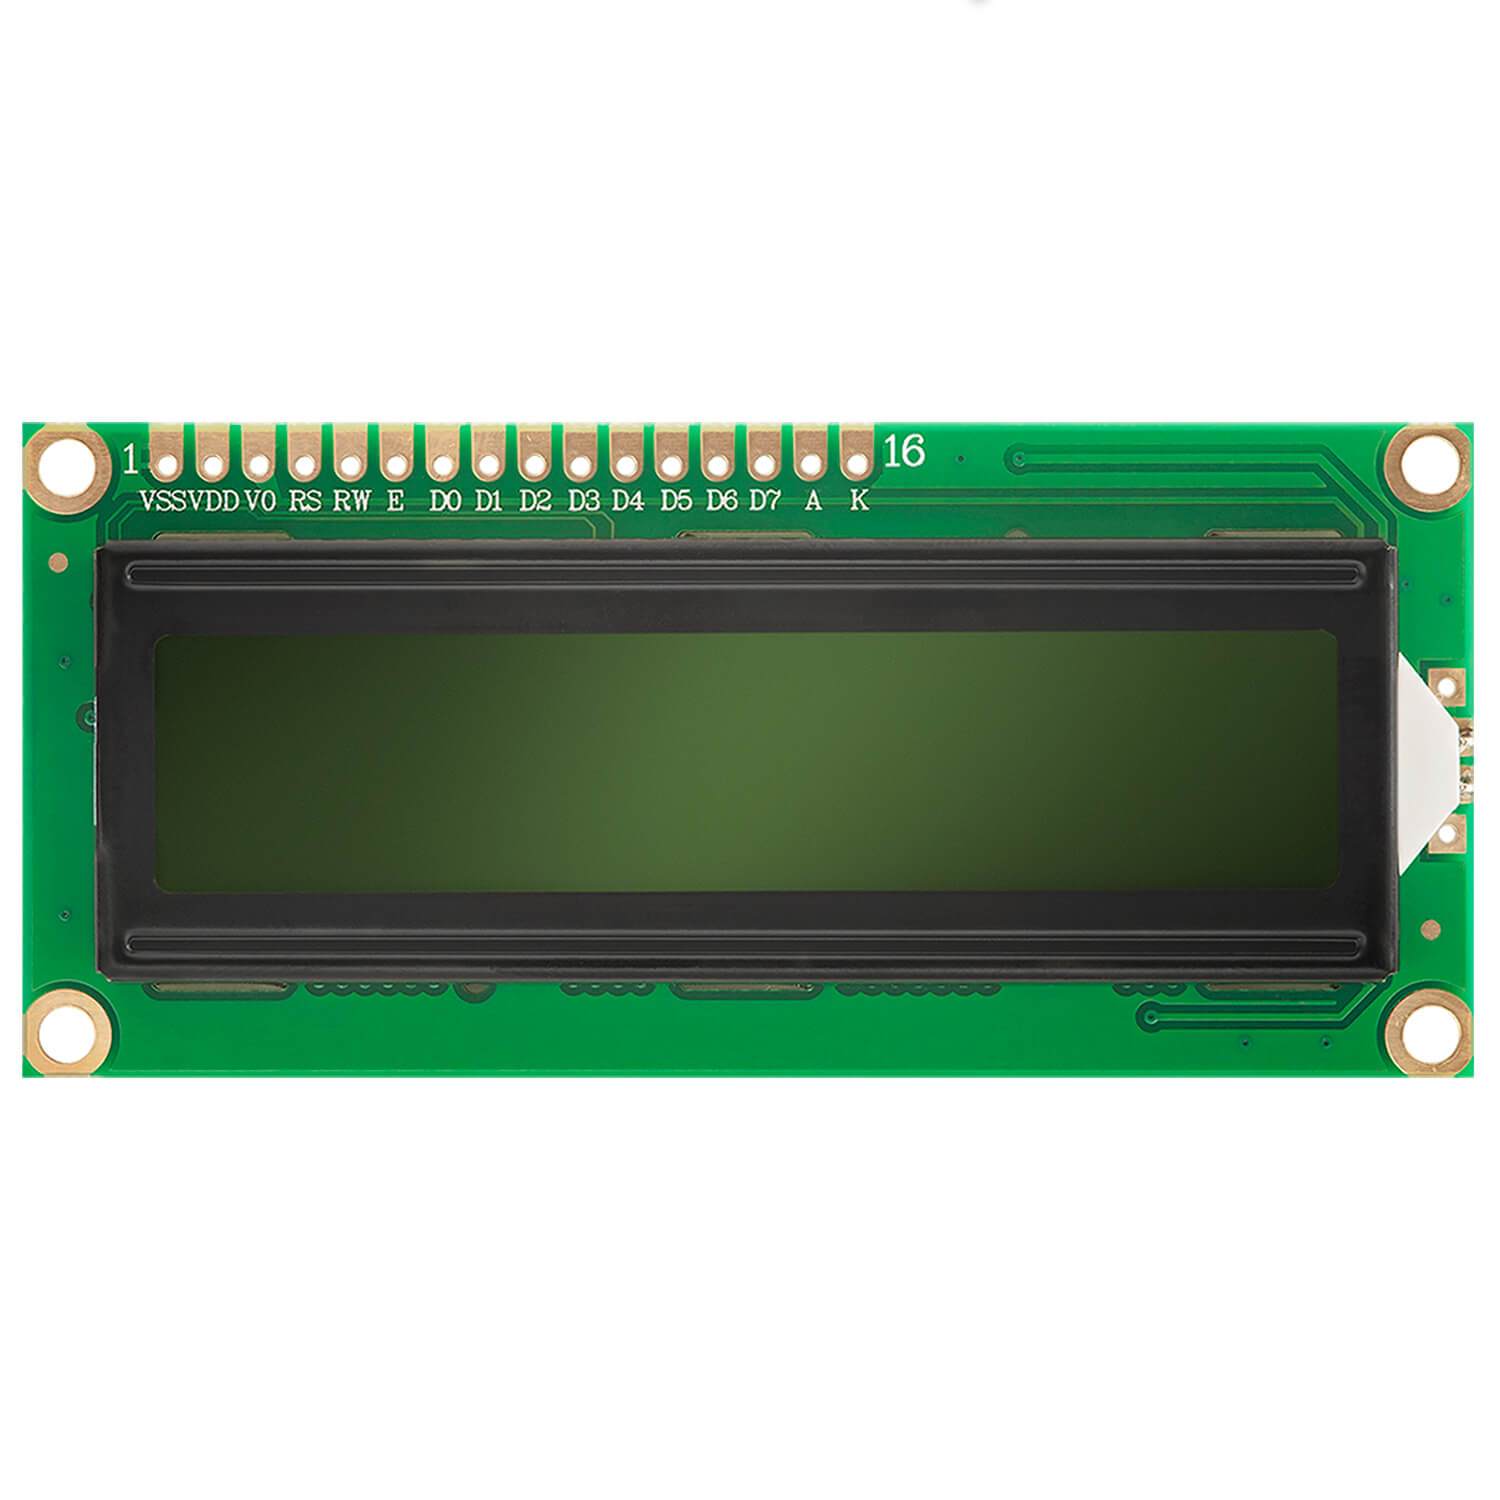 HD44780 1602 LCD Modul Display 2x16 Zeichen (mit grünem Hintergrund) kompatibel mit Arduino und Raspberry Pi - AZ-Delivery